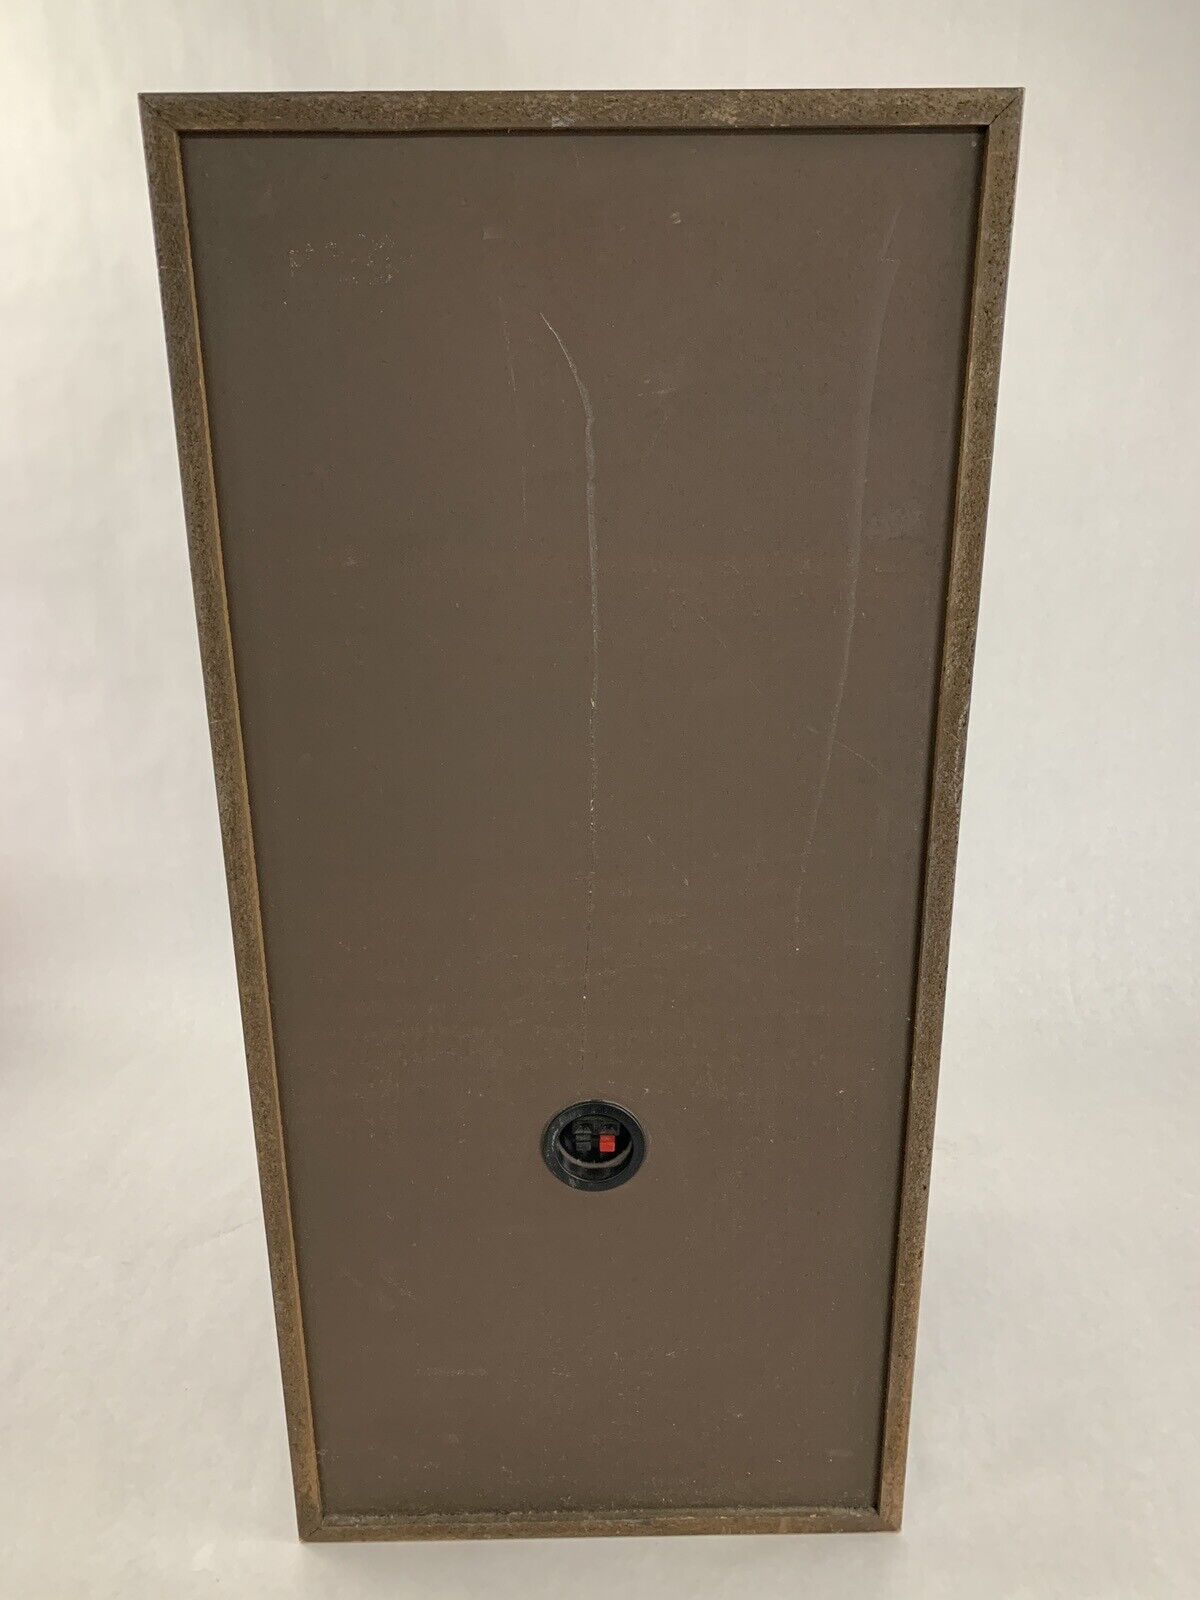 Pioneer CS-B5000 Speaker Pair Tested